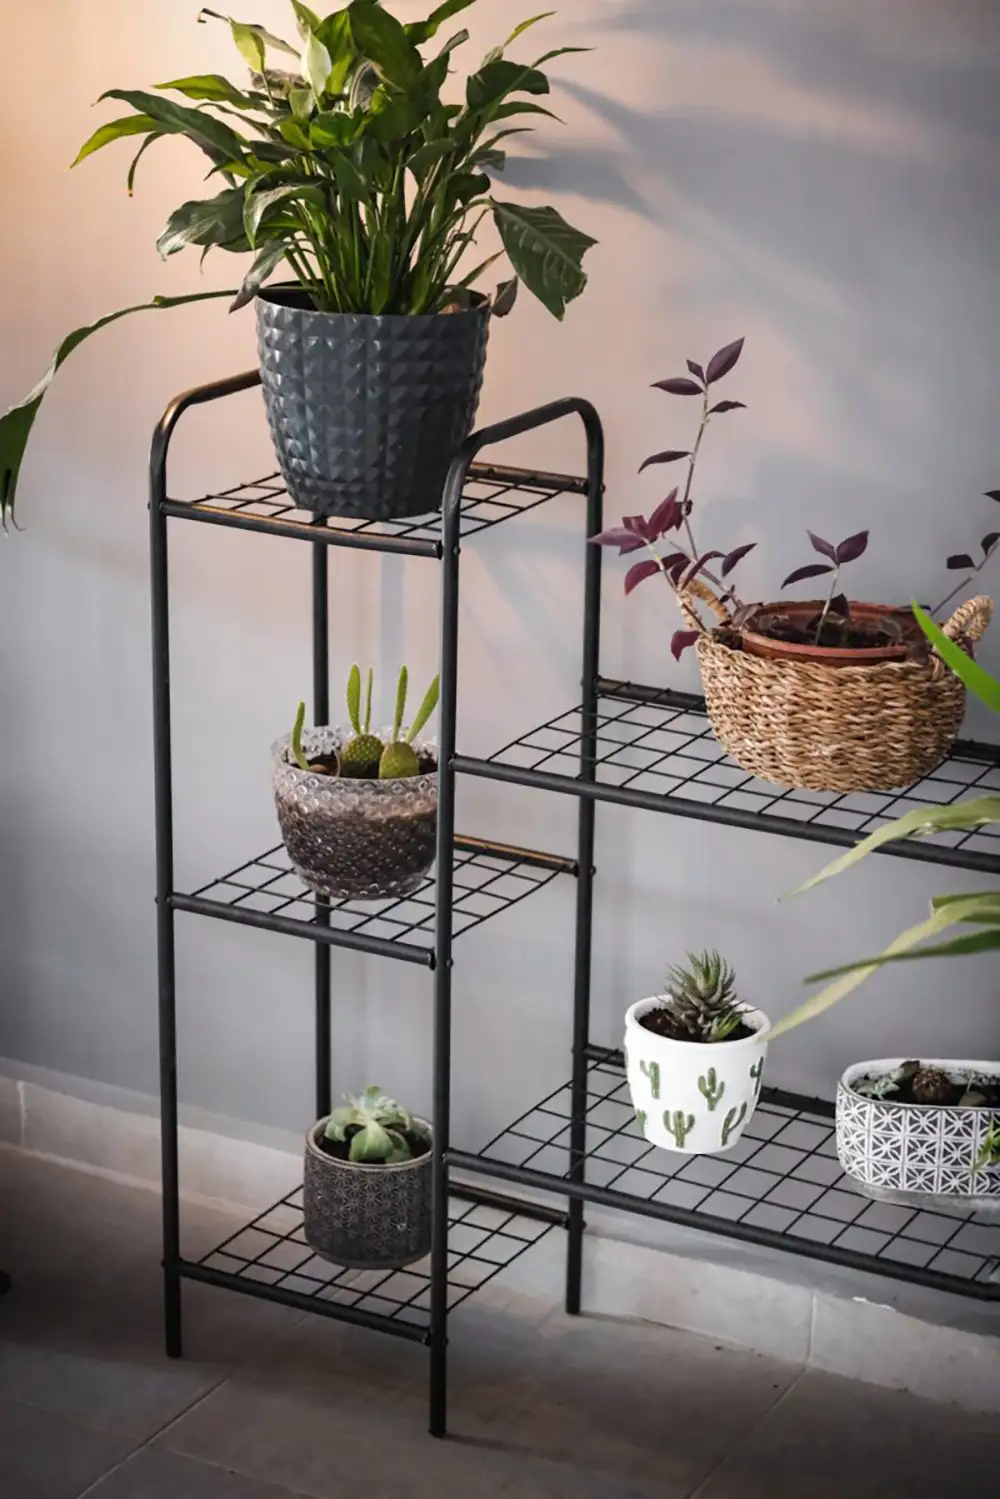 Oval Designed Metal Flower Pot Stands (5 Shelves)